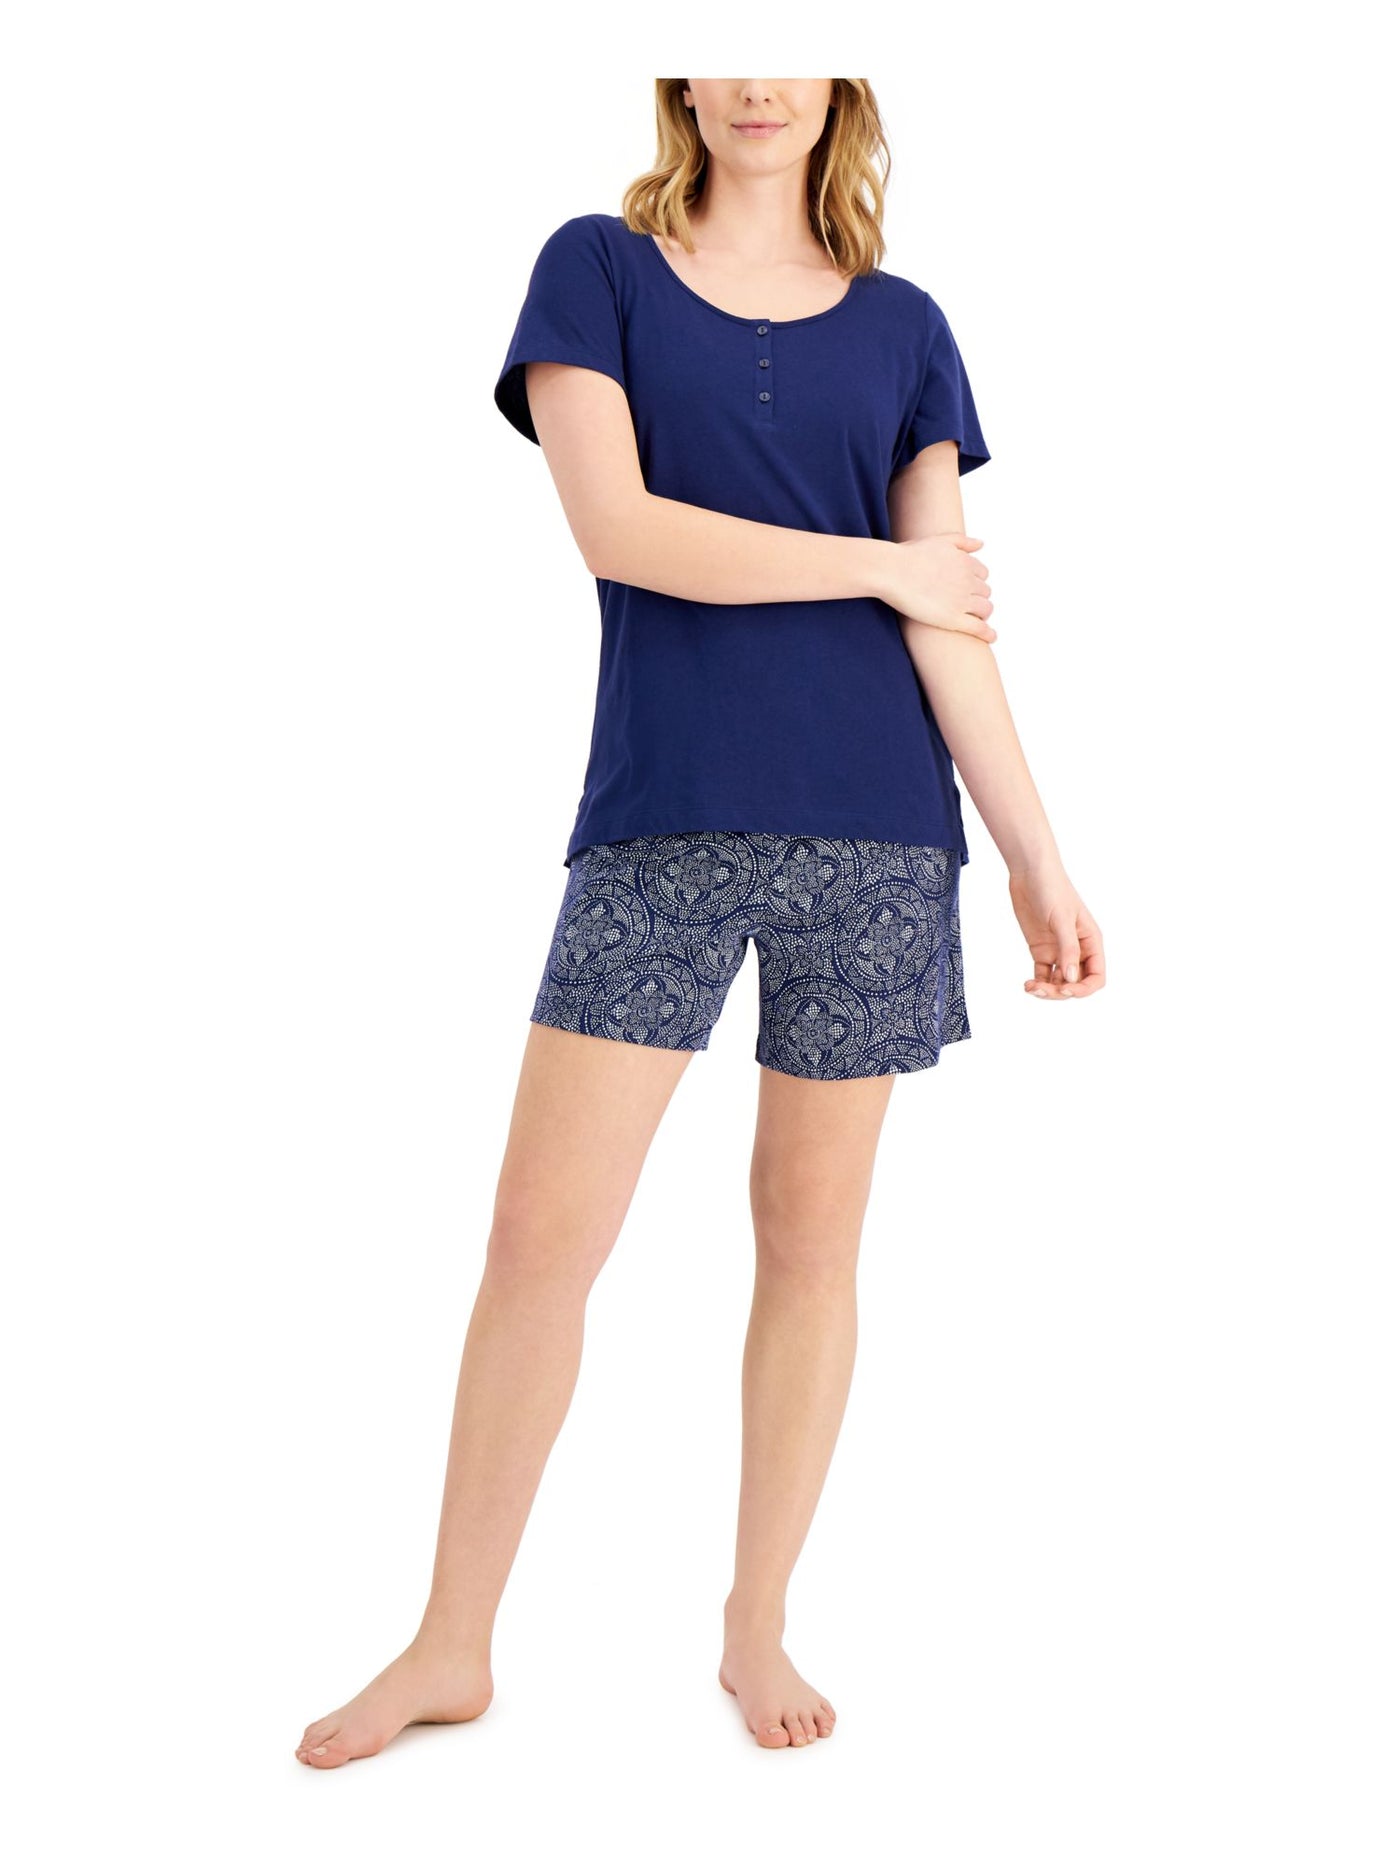 CHARTER CLUB Womens Navy Top Elastic Band Short Sleeve and Shorts Pajamas XS